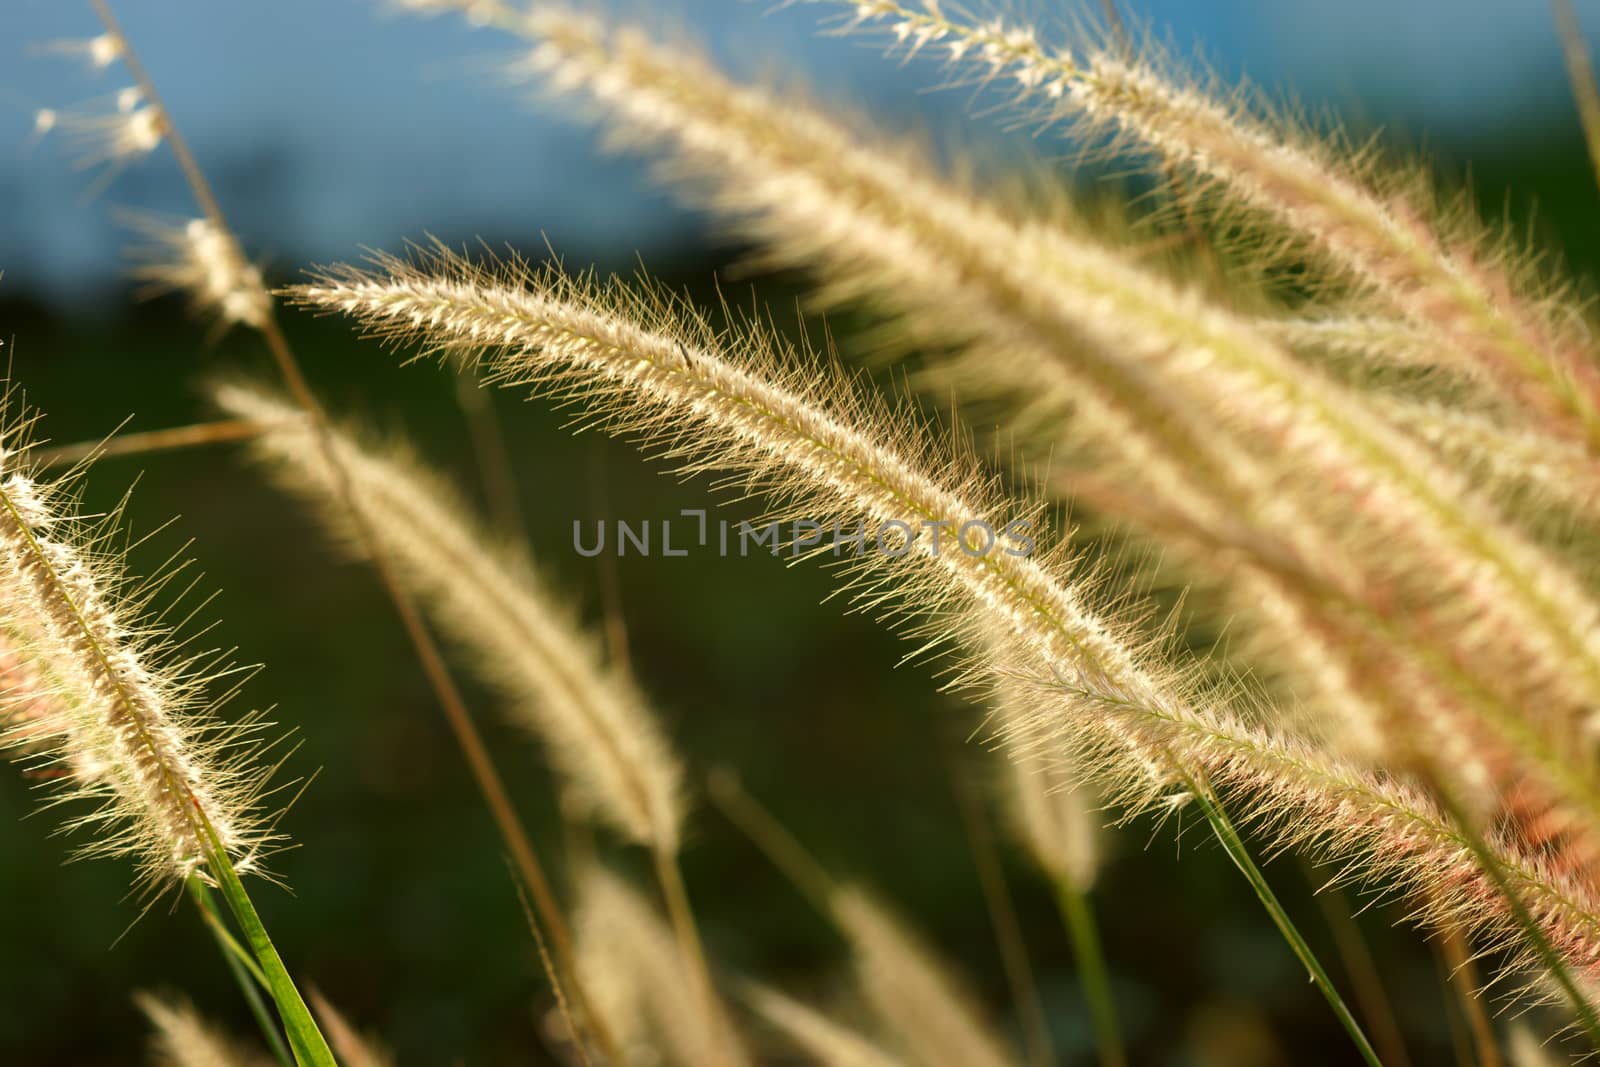 Flower grass impact sunlight. by Noppharat_th